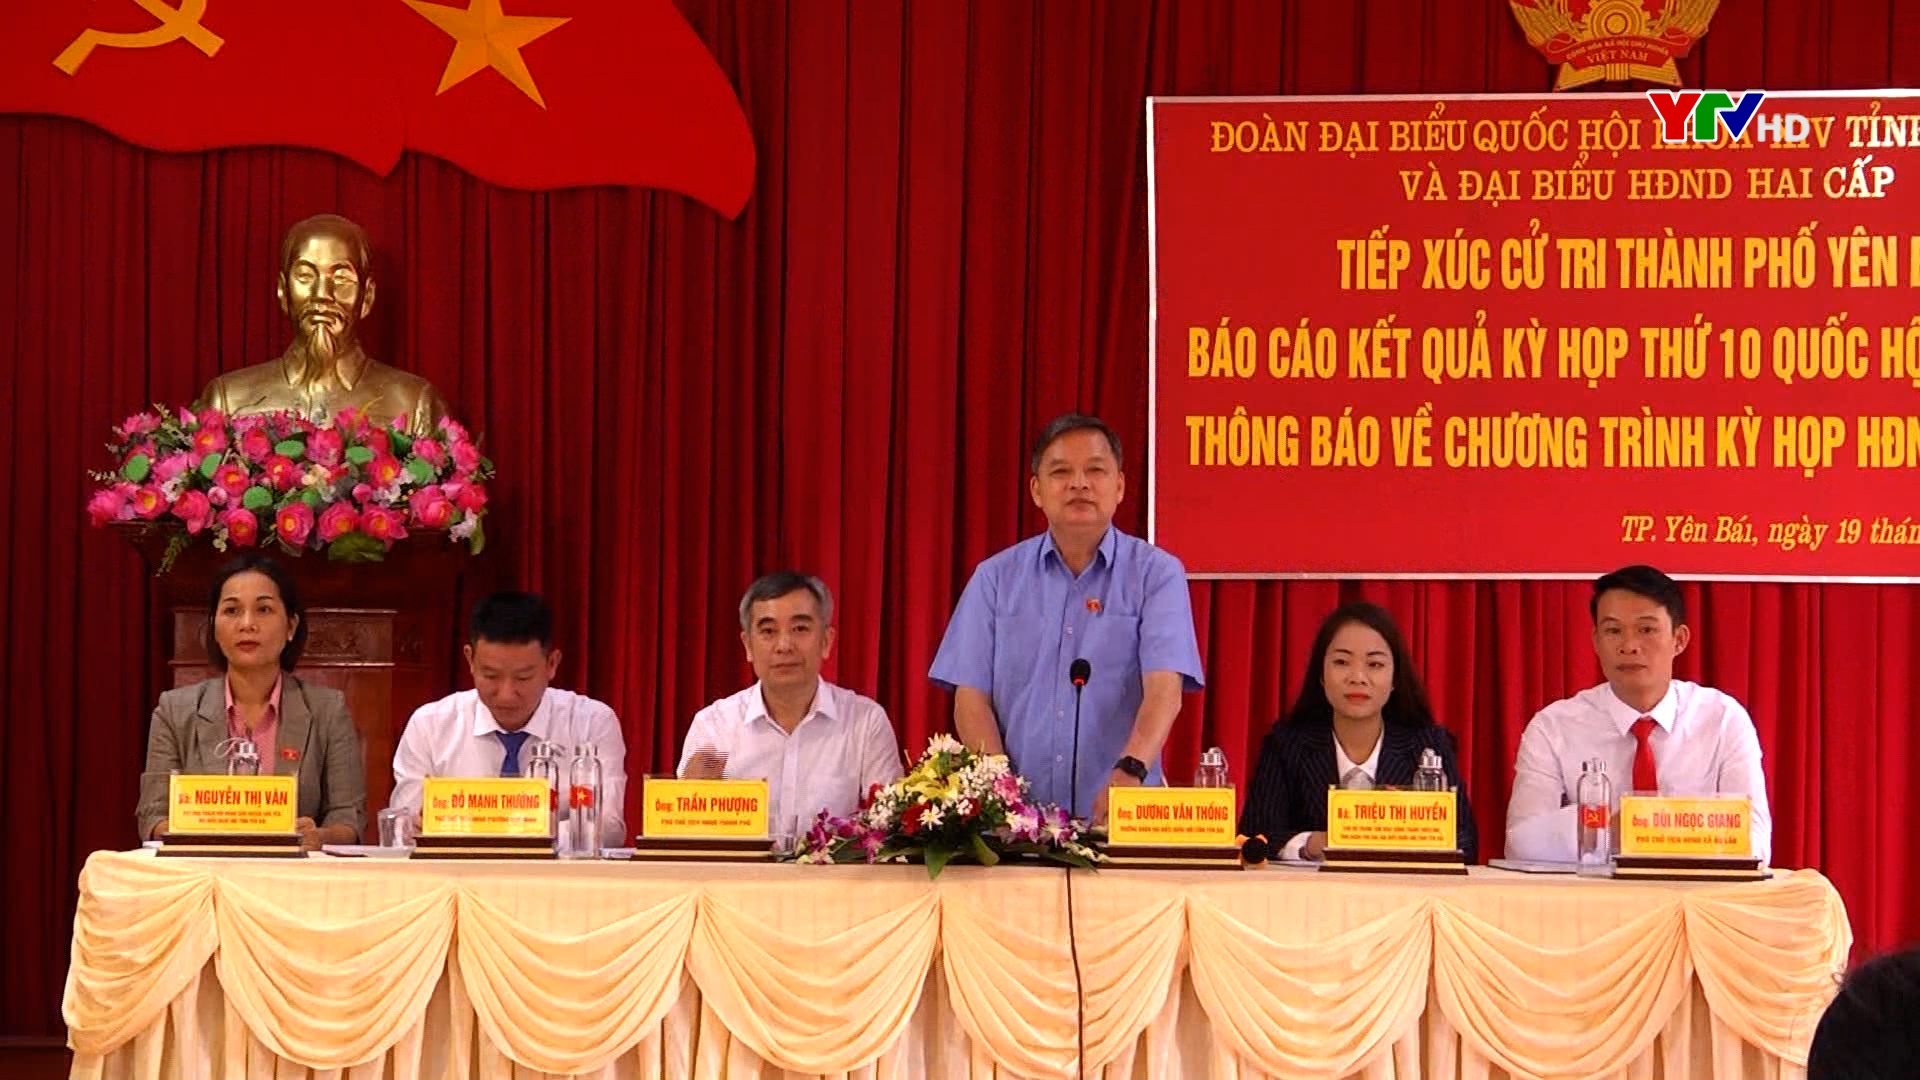 Đoàn Đại biểu Quốc hội tỉnh Yên Bái khóa XIV tiếp xúc cử tri thành phố Yên Bái